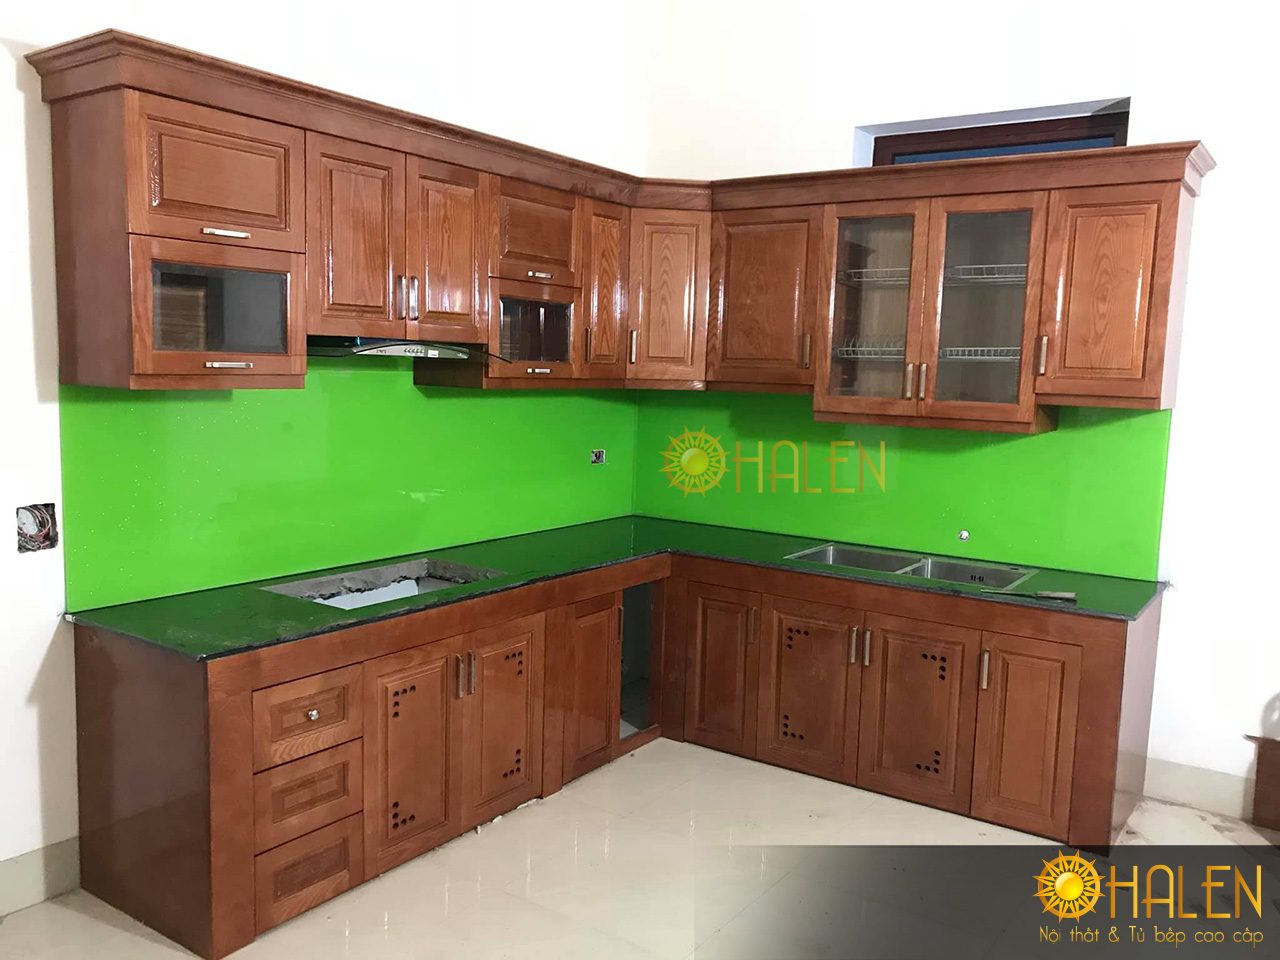 Tủ bếp gỗ xoan đào kết hợp kính bếp màu xanh lá cây. OHALEN thi công tại Thanh Trì -HN , gia đình chú Biên